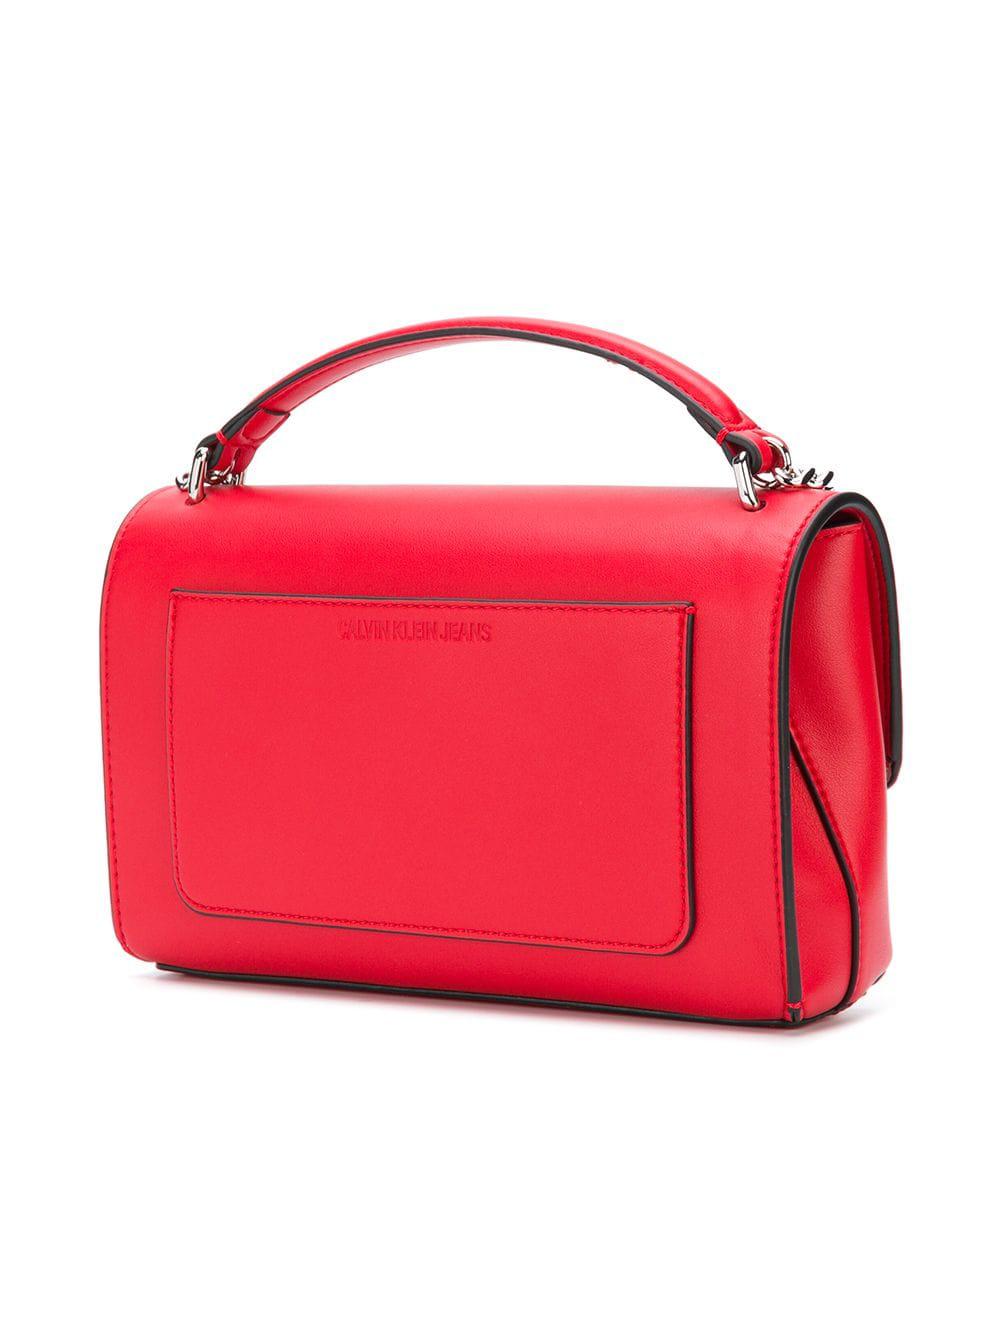 Calvin Klein Denim Sculpted Flap Shoulder Bag in Red - Lyst